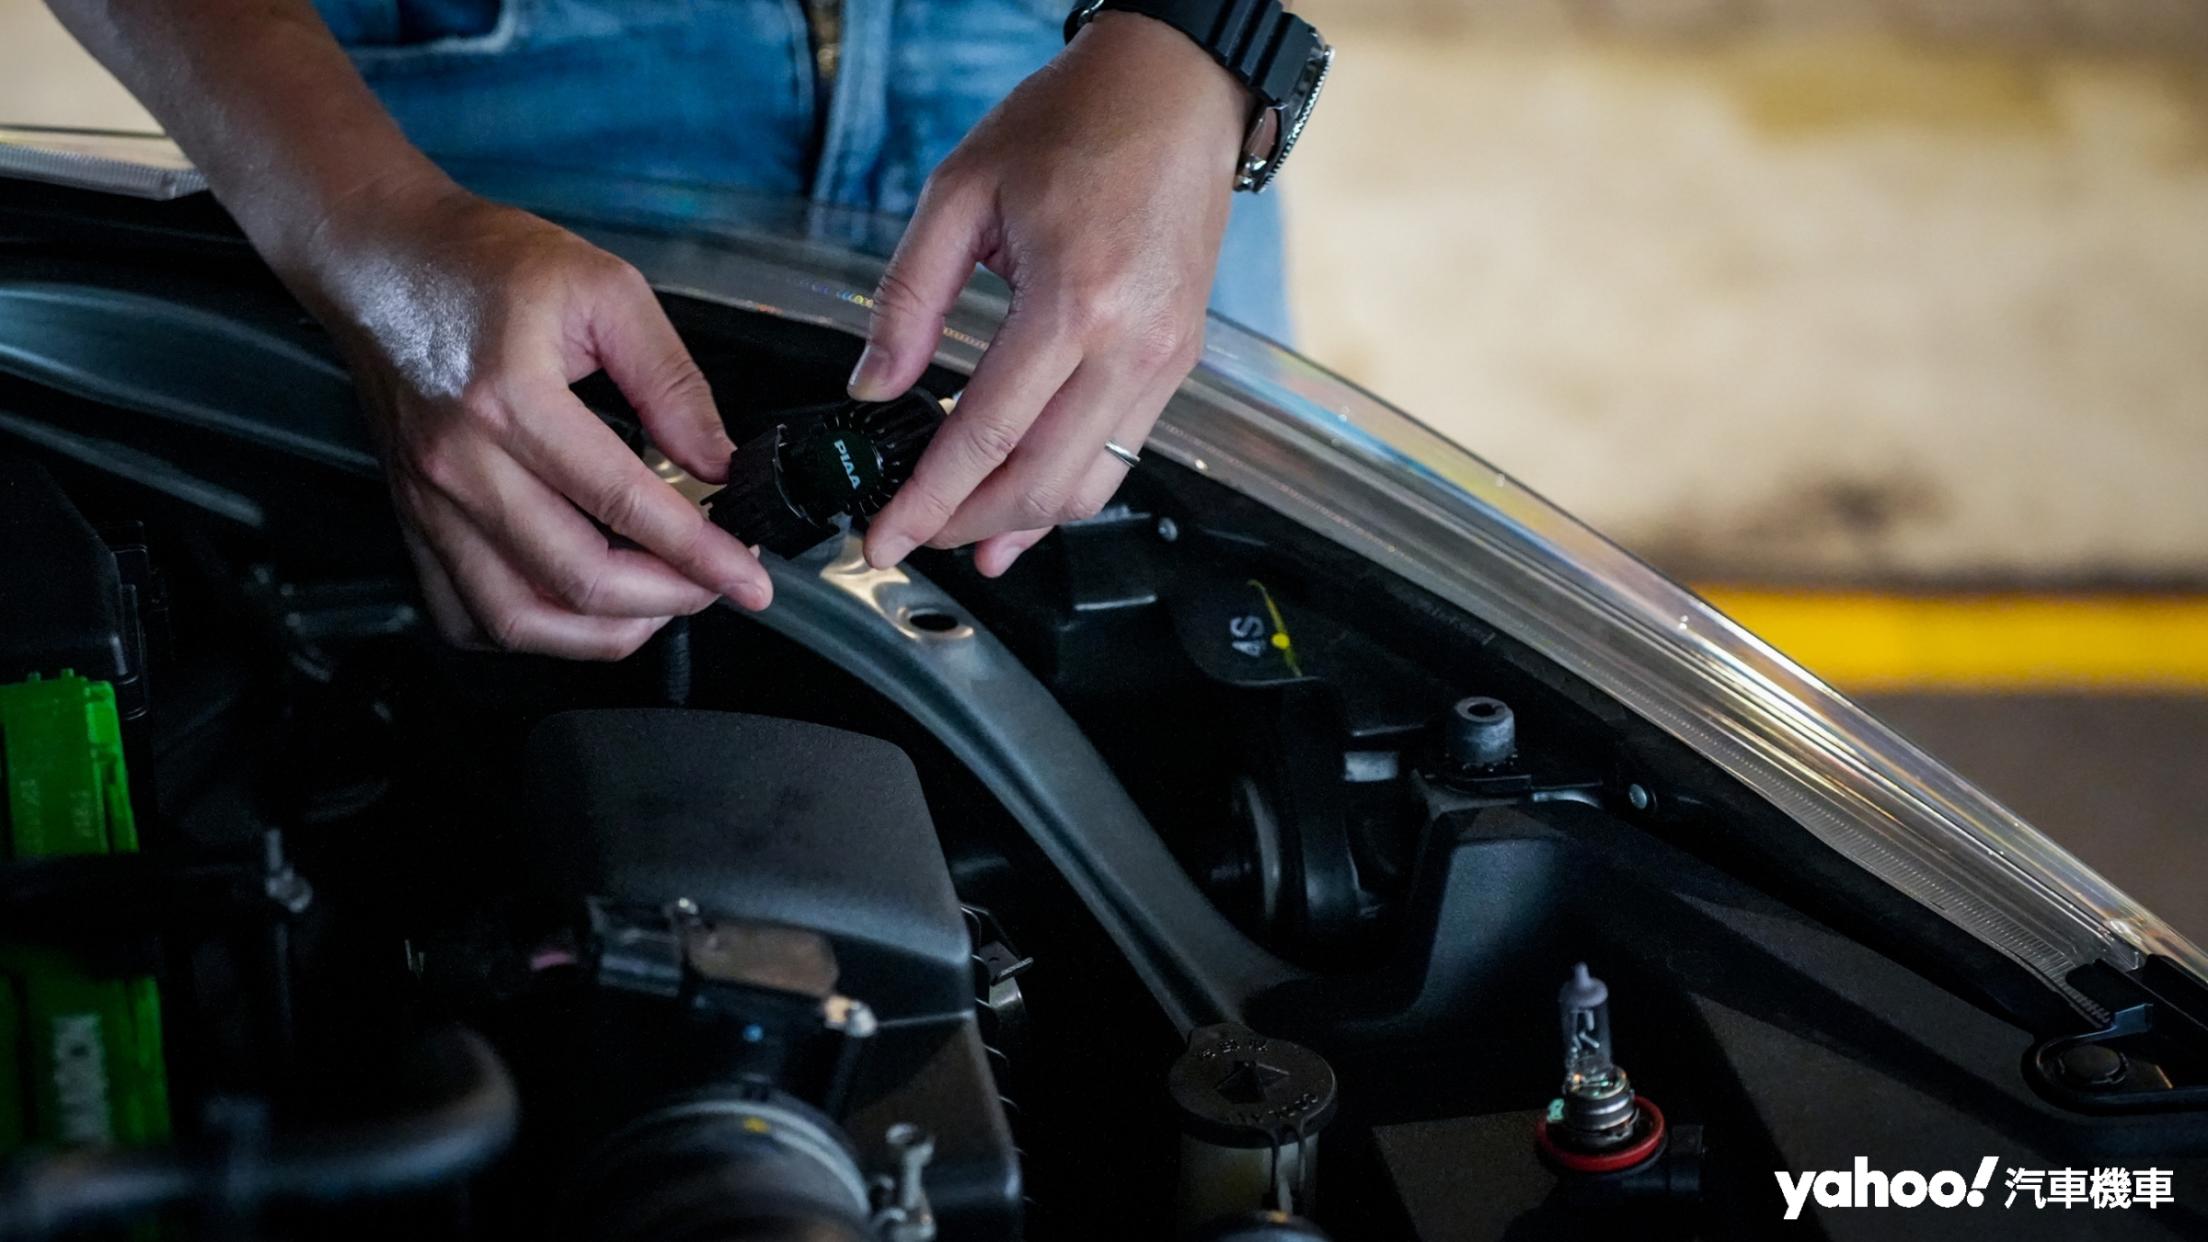 示範車Toyota Yaris的拆裝過程還算簡單，不過就是小心燙手。